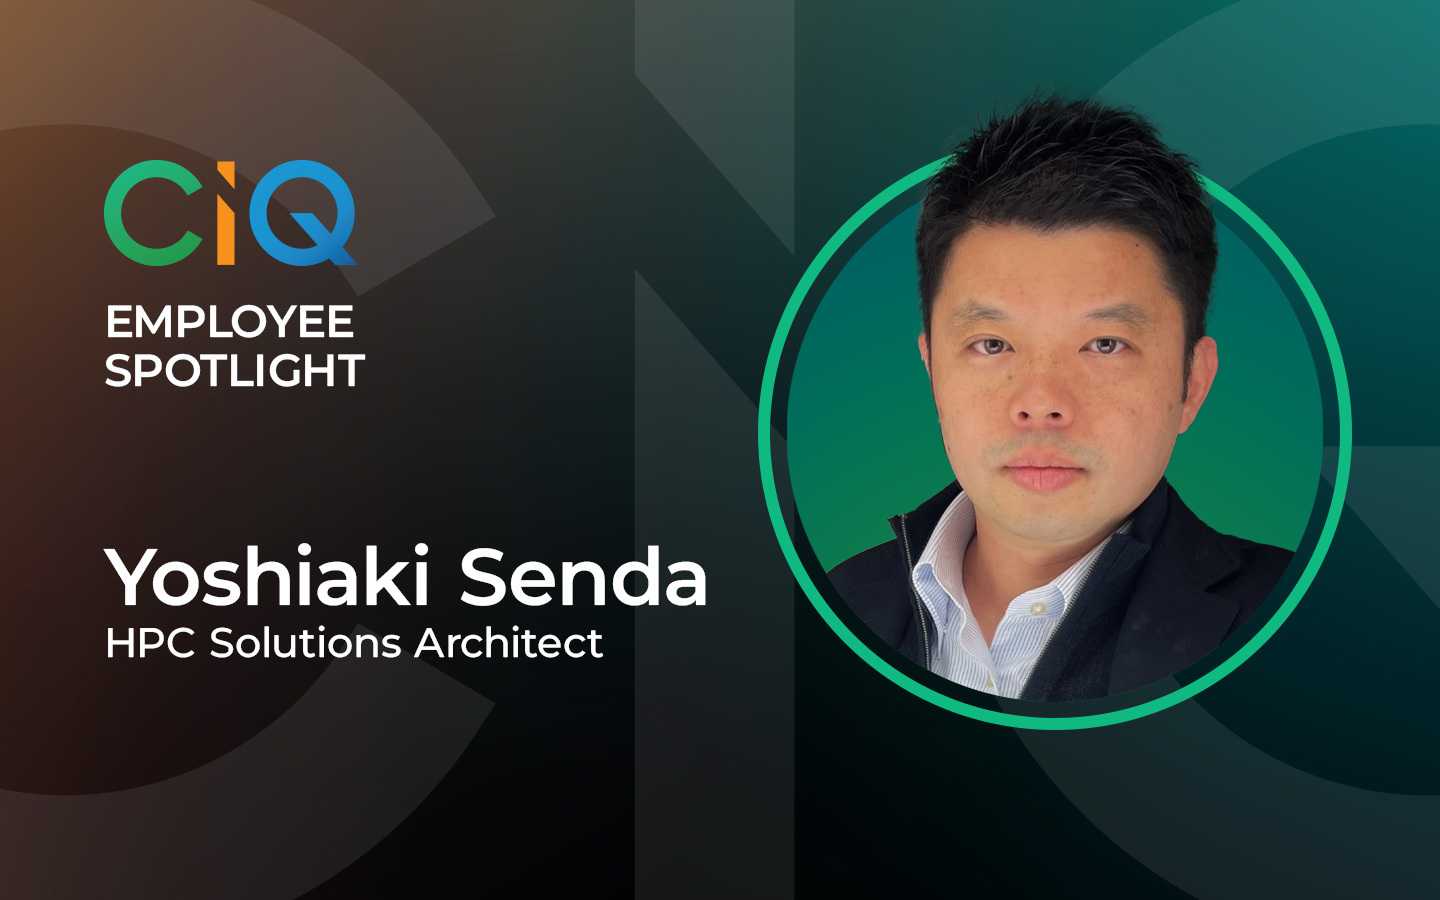 CIQ Employee Spotlight: Yoshiaki Senda